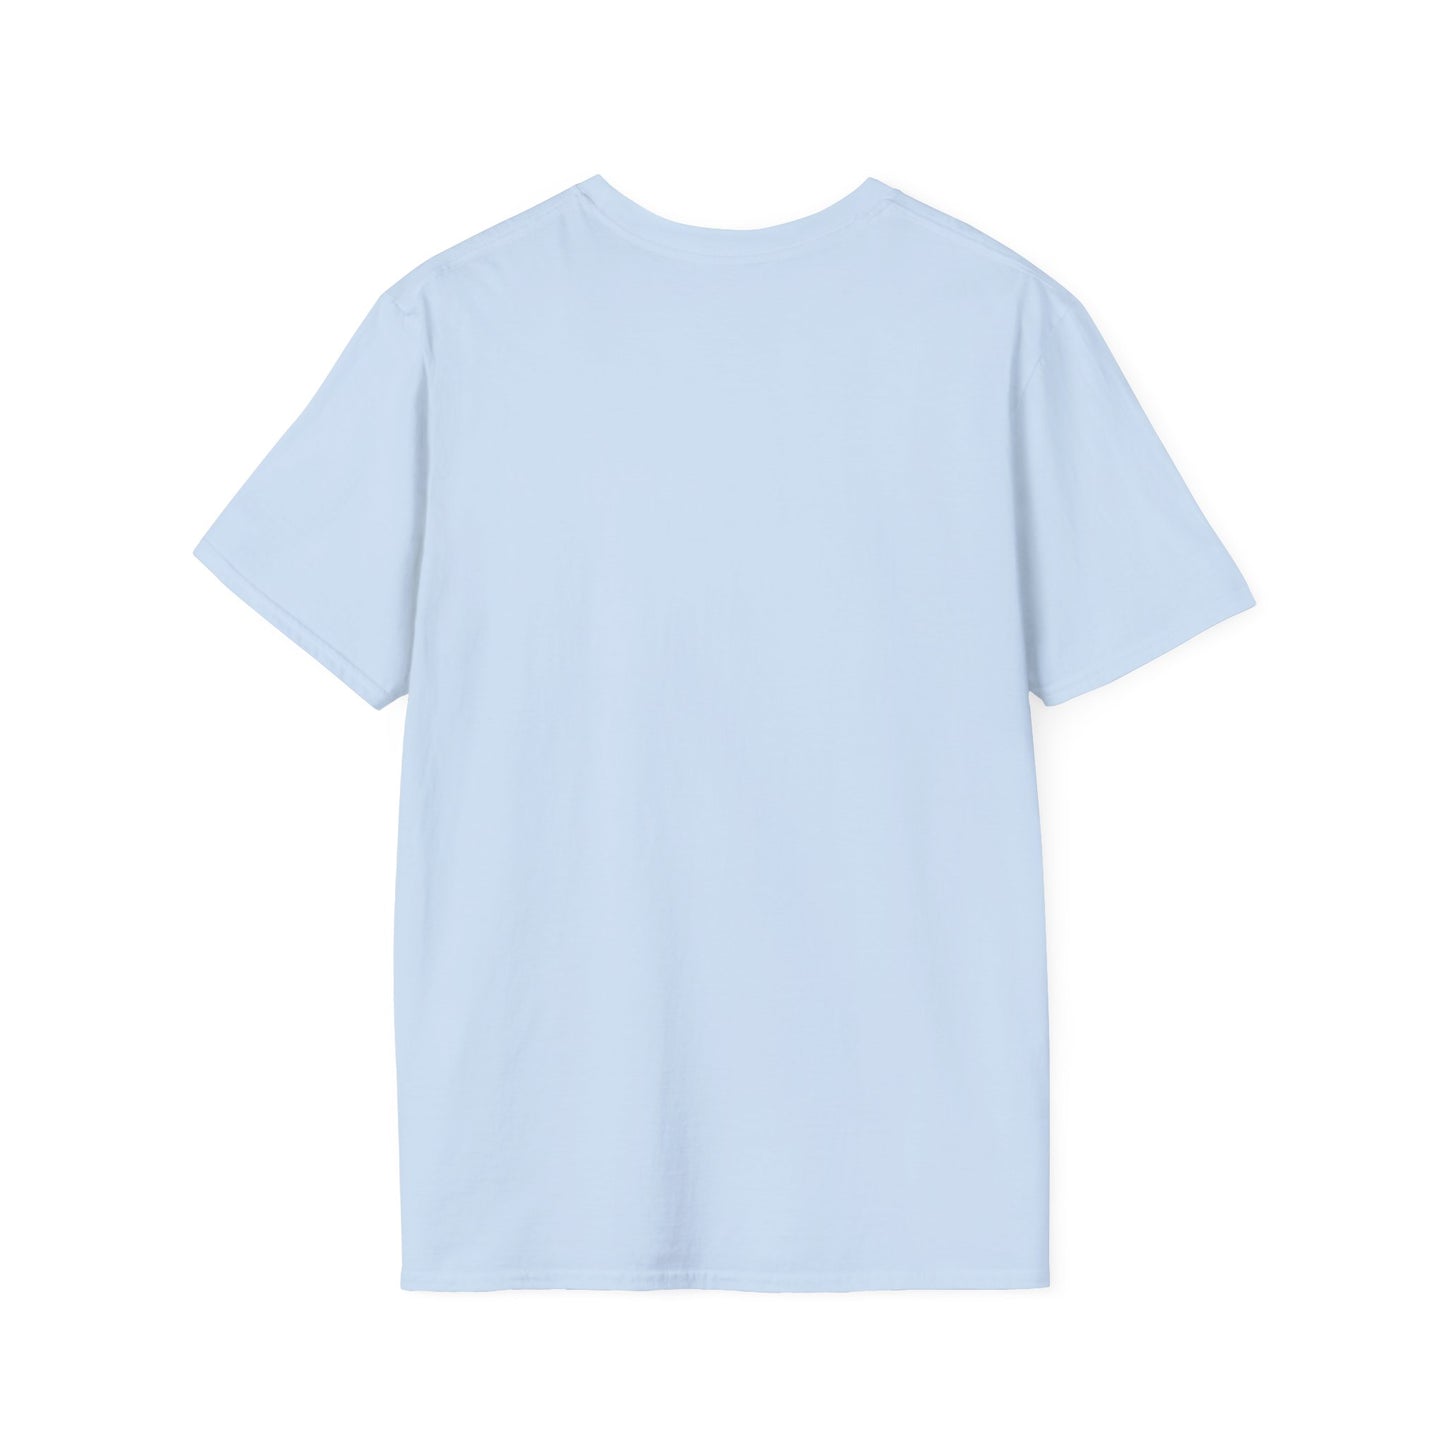 Sassy Mom Tye Dye Unisex Softstyle T-Shirt